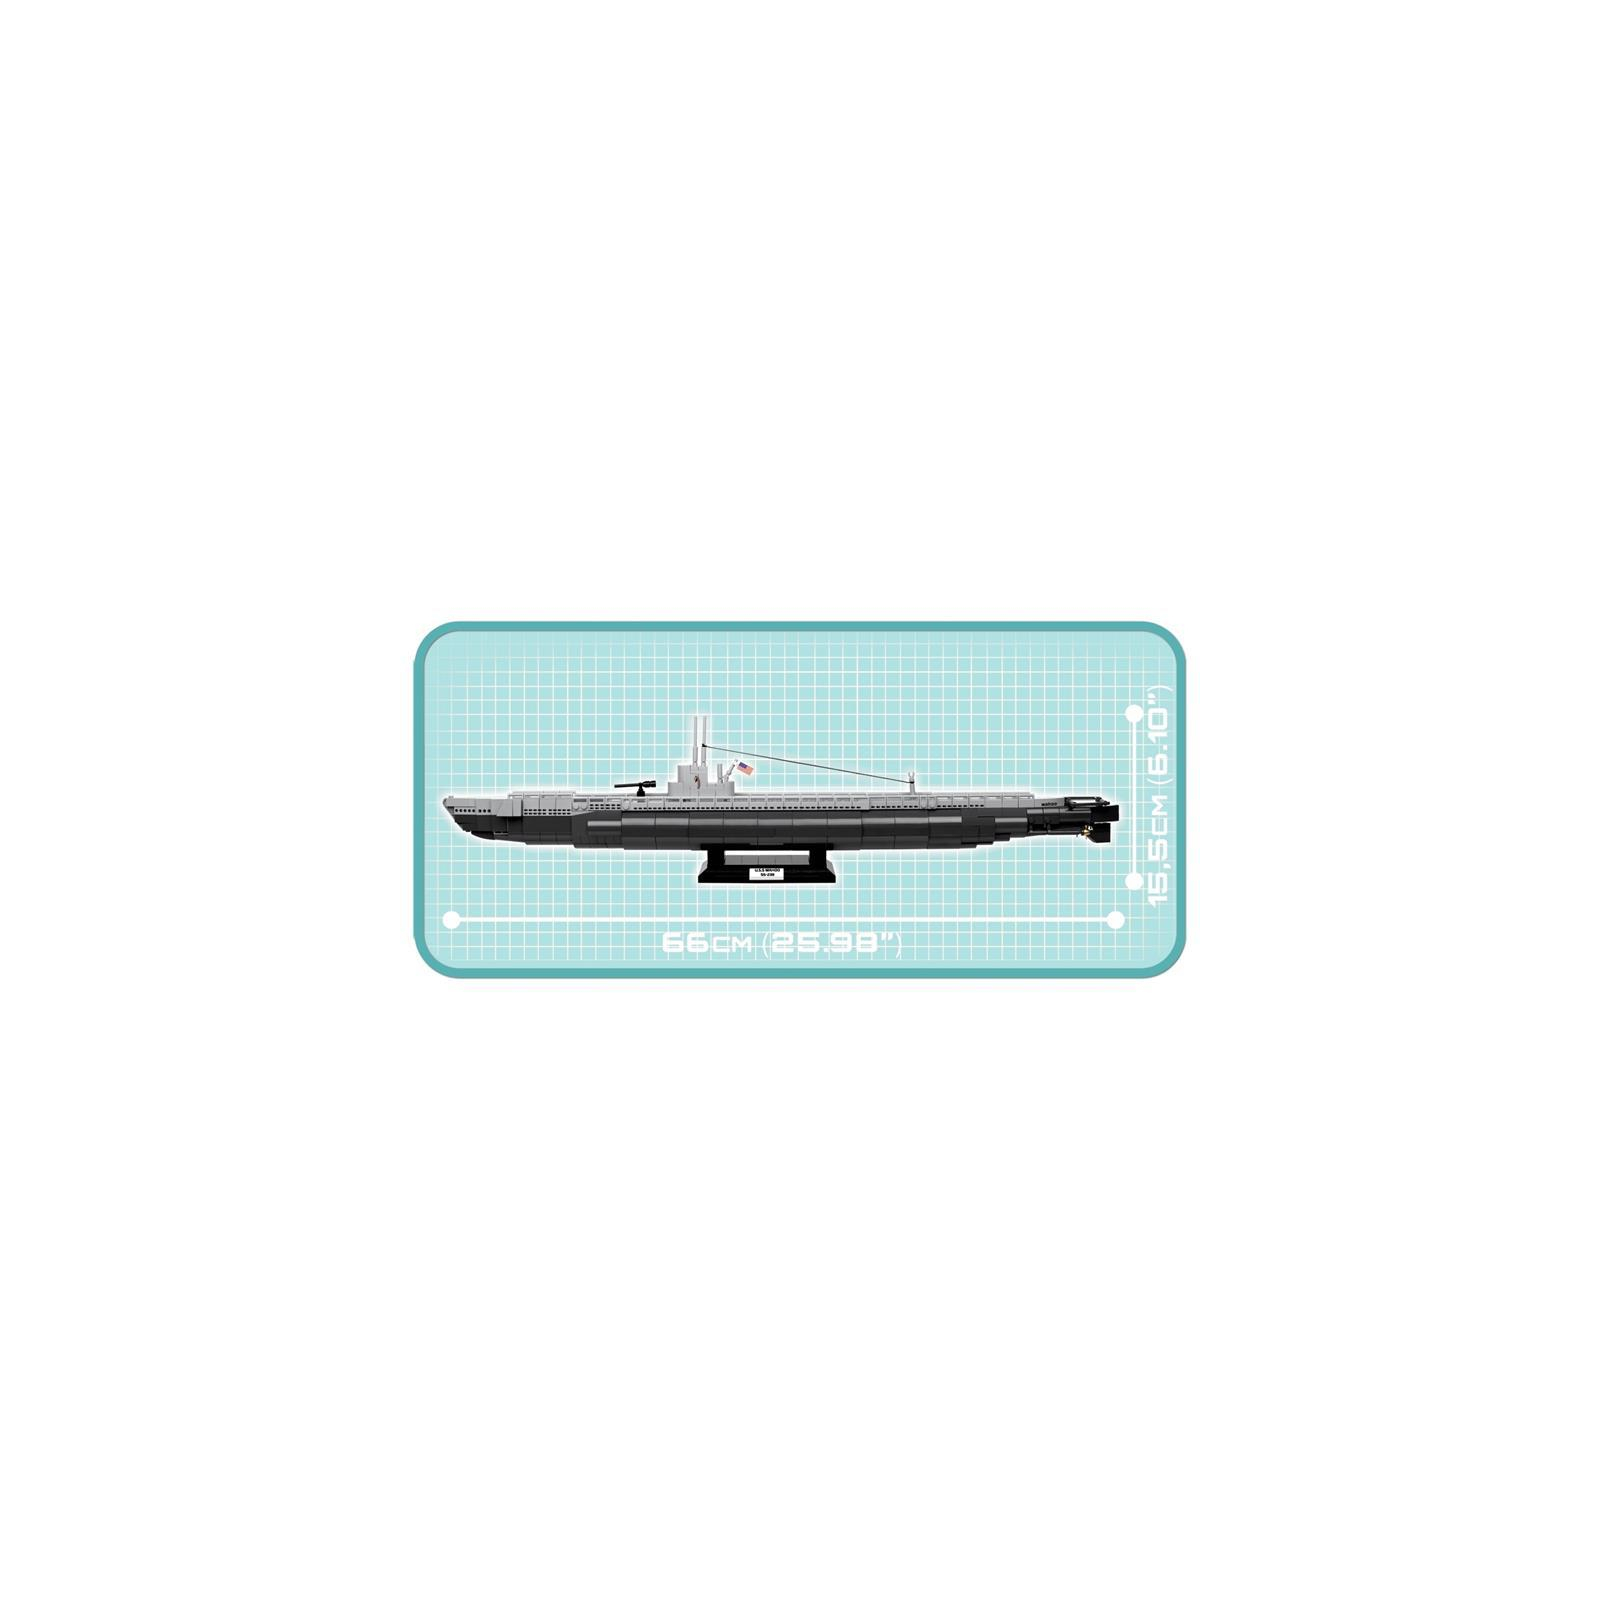 Конструктор Cobi Подводная лодка Ваху (SS-238), 700 деталей (COBI-4806) изображение 4